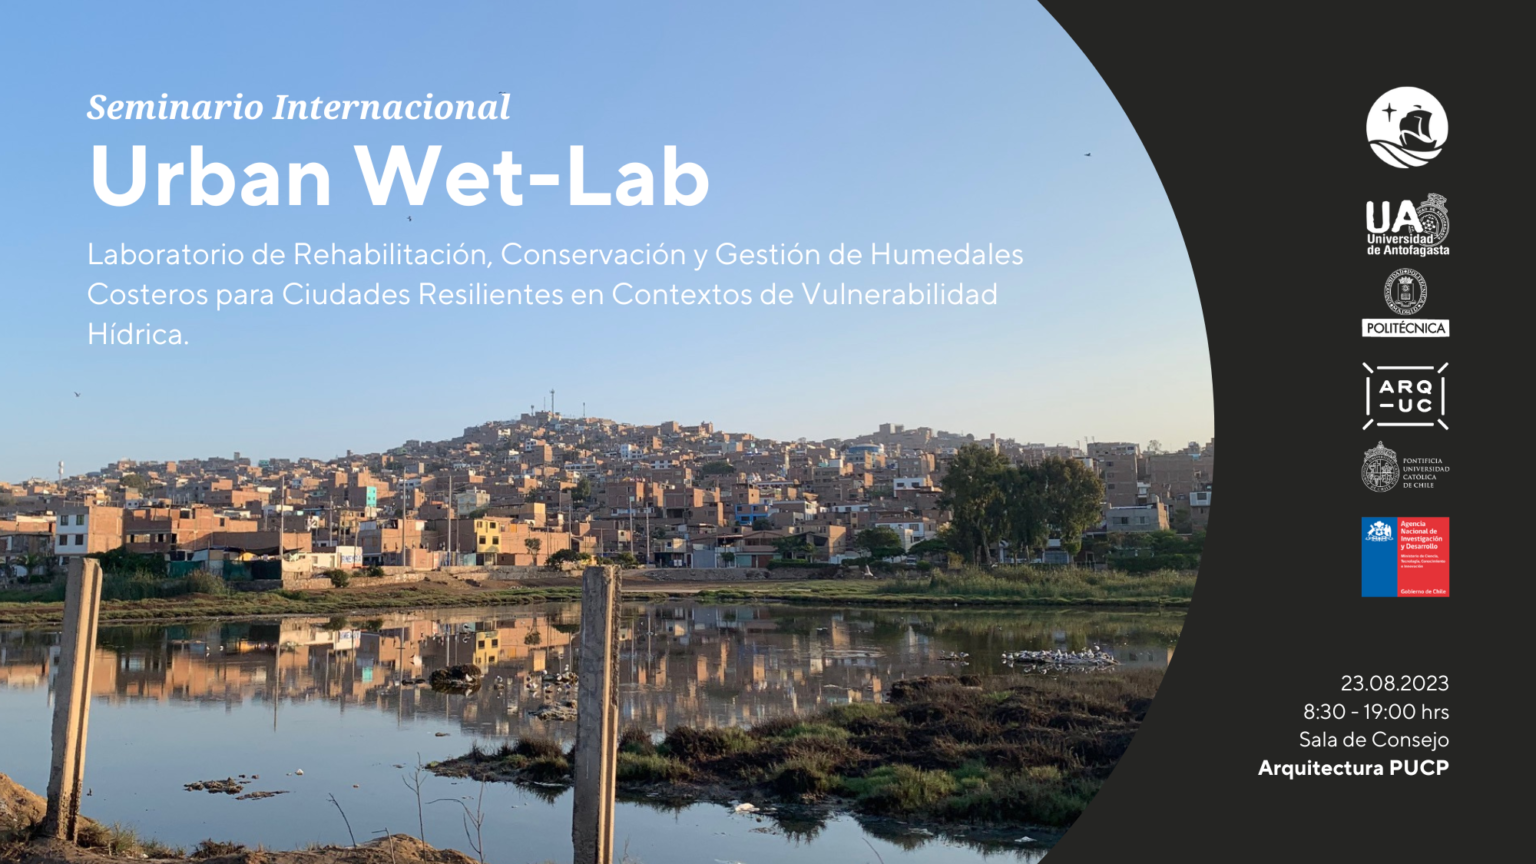 Seminario-Urban-Wet-Lab-4-1536x864.png